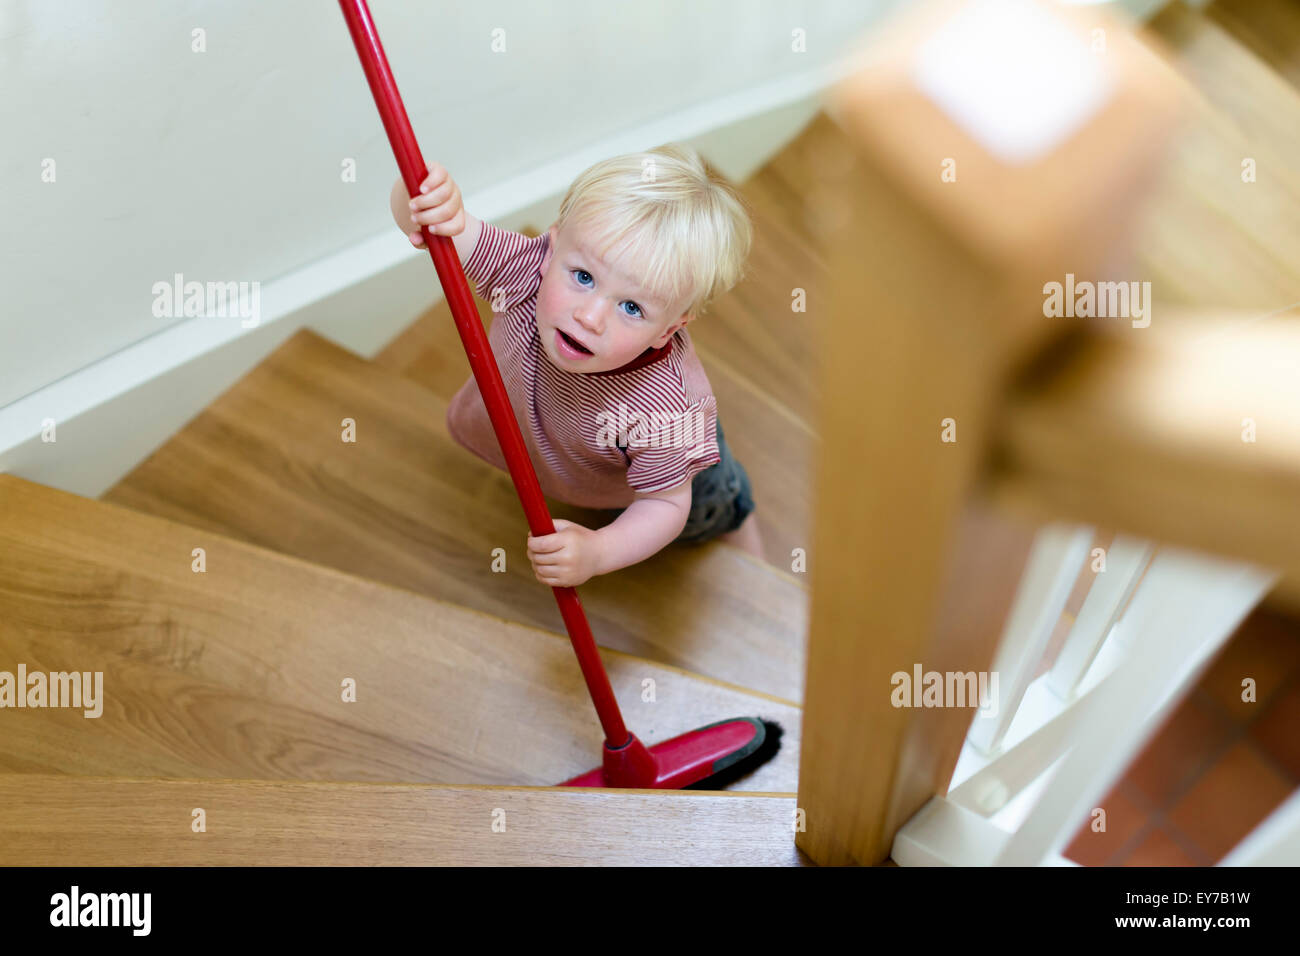 Joven, de 2 años, barrer una escalera con una escoba. Foto de stock